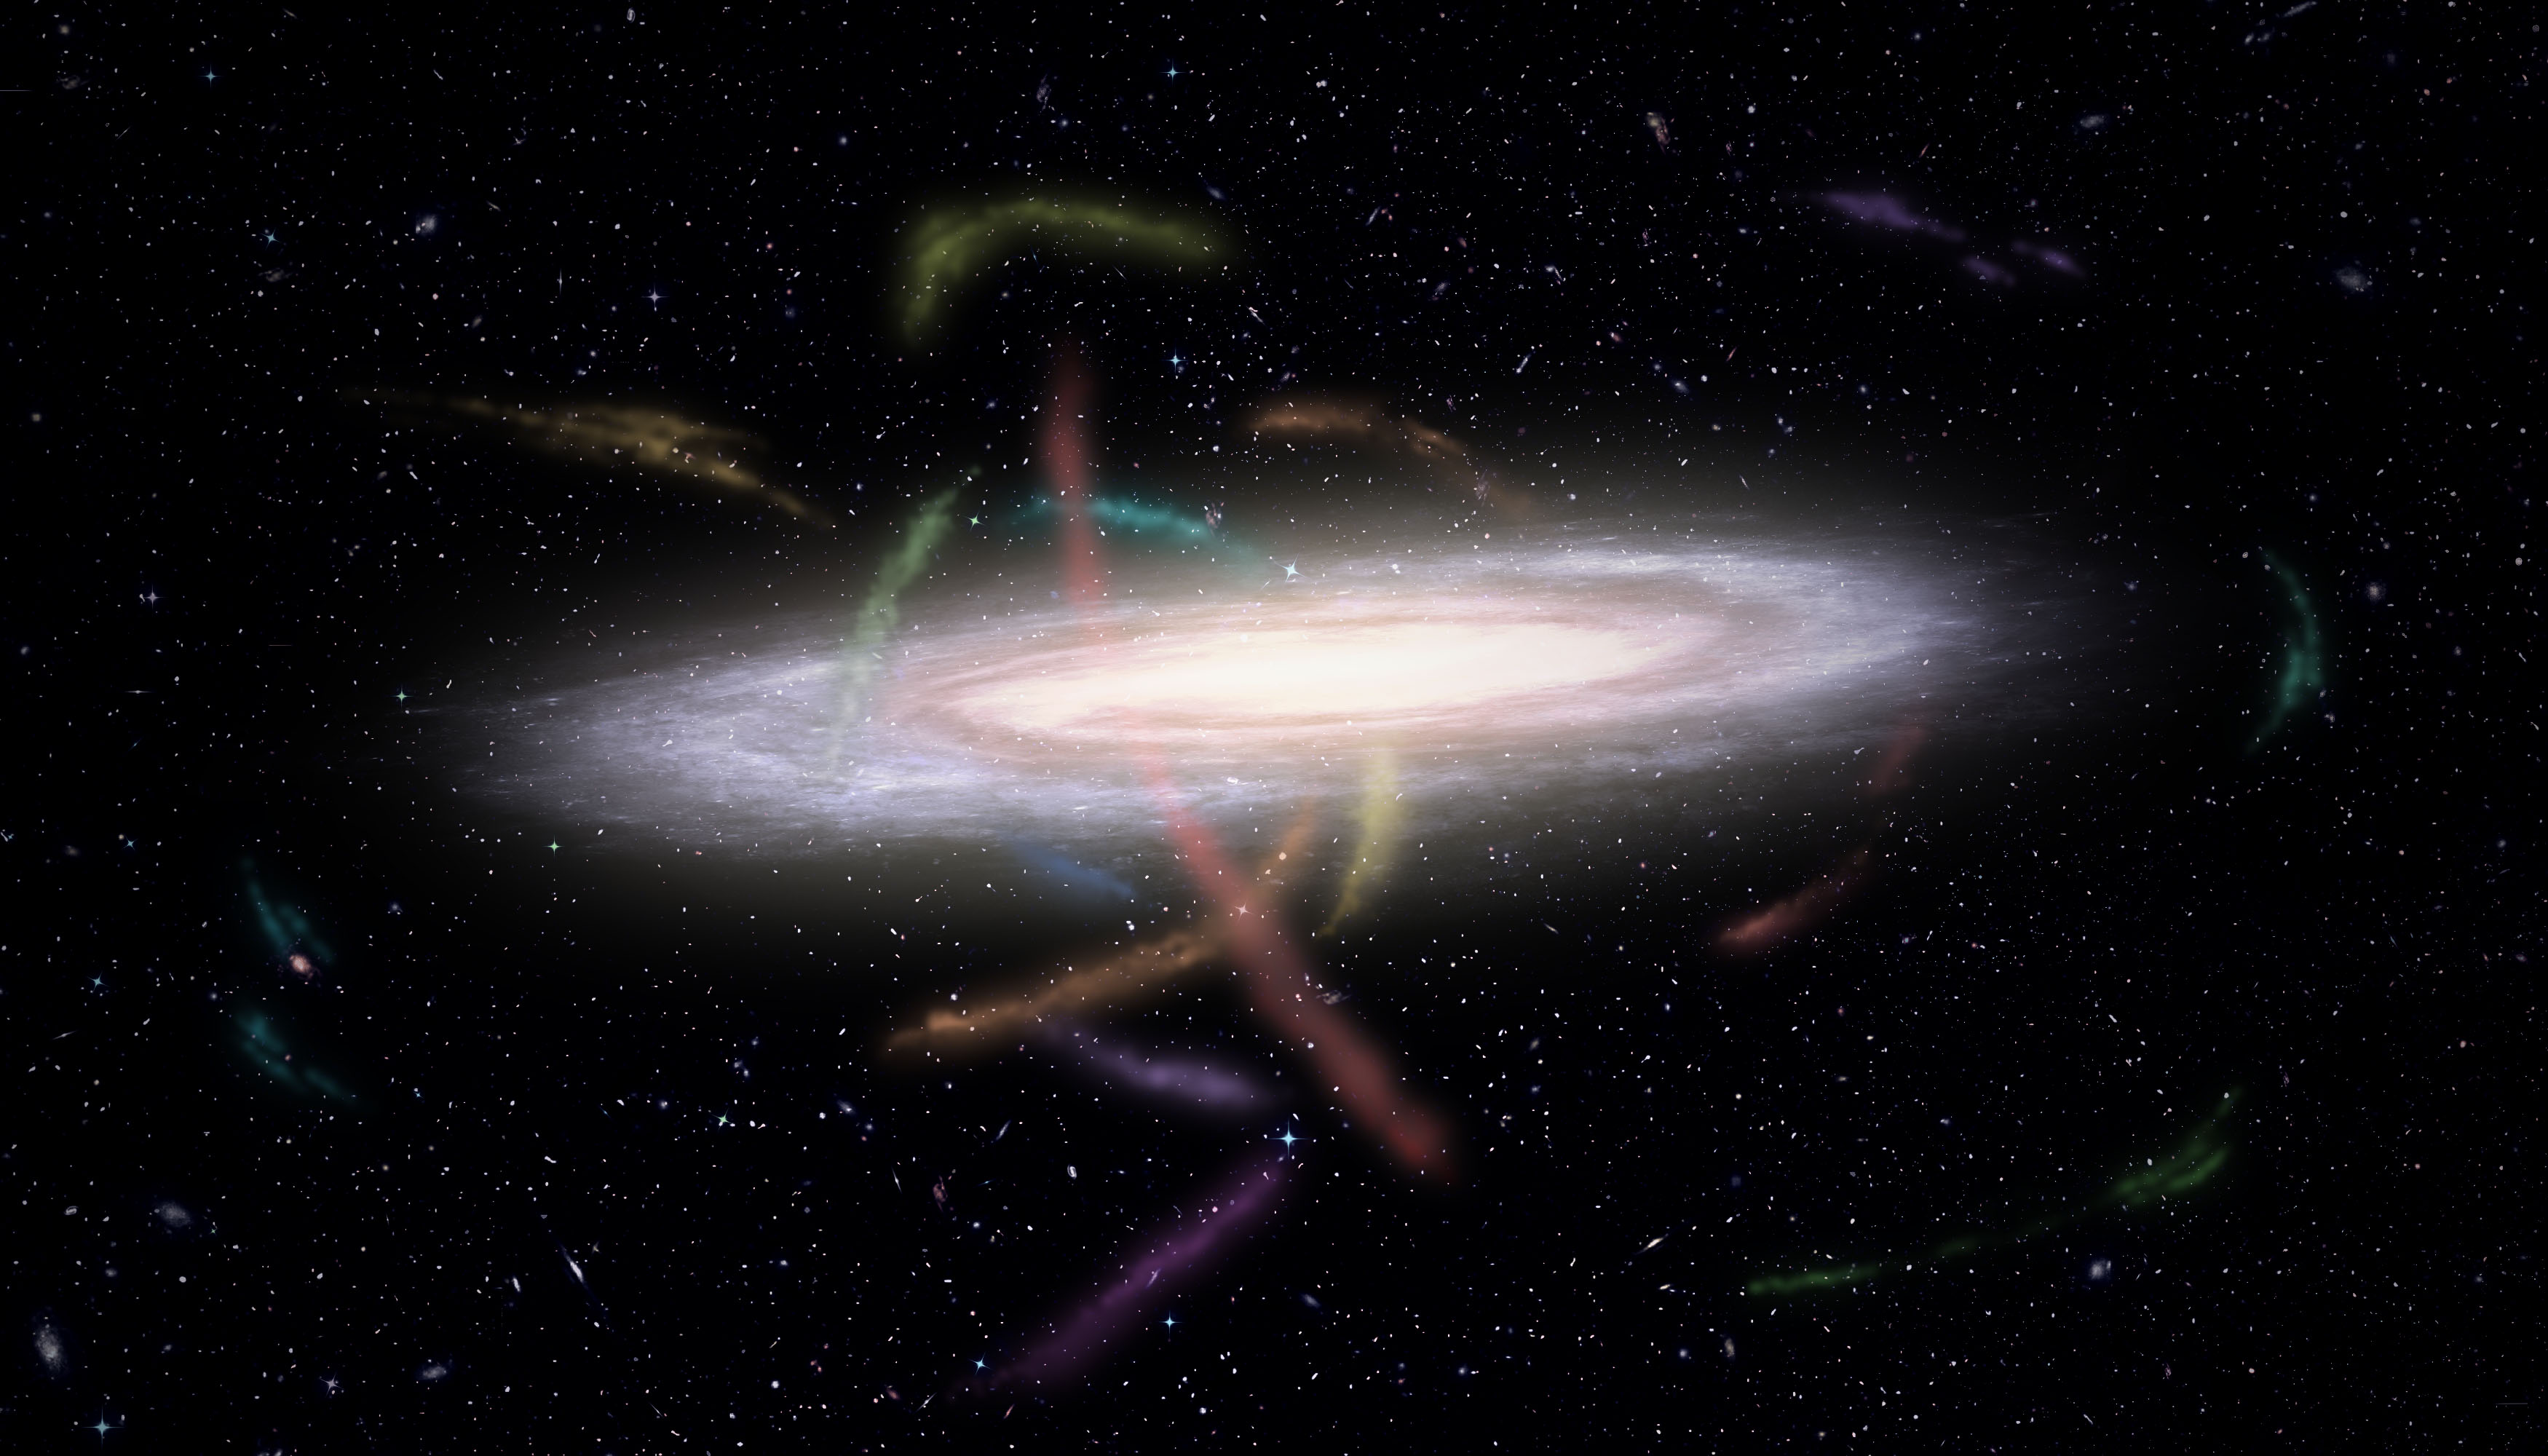 Twelve for dinner: The Milky Way’s feeding habits shine a light on dark matter